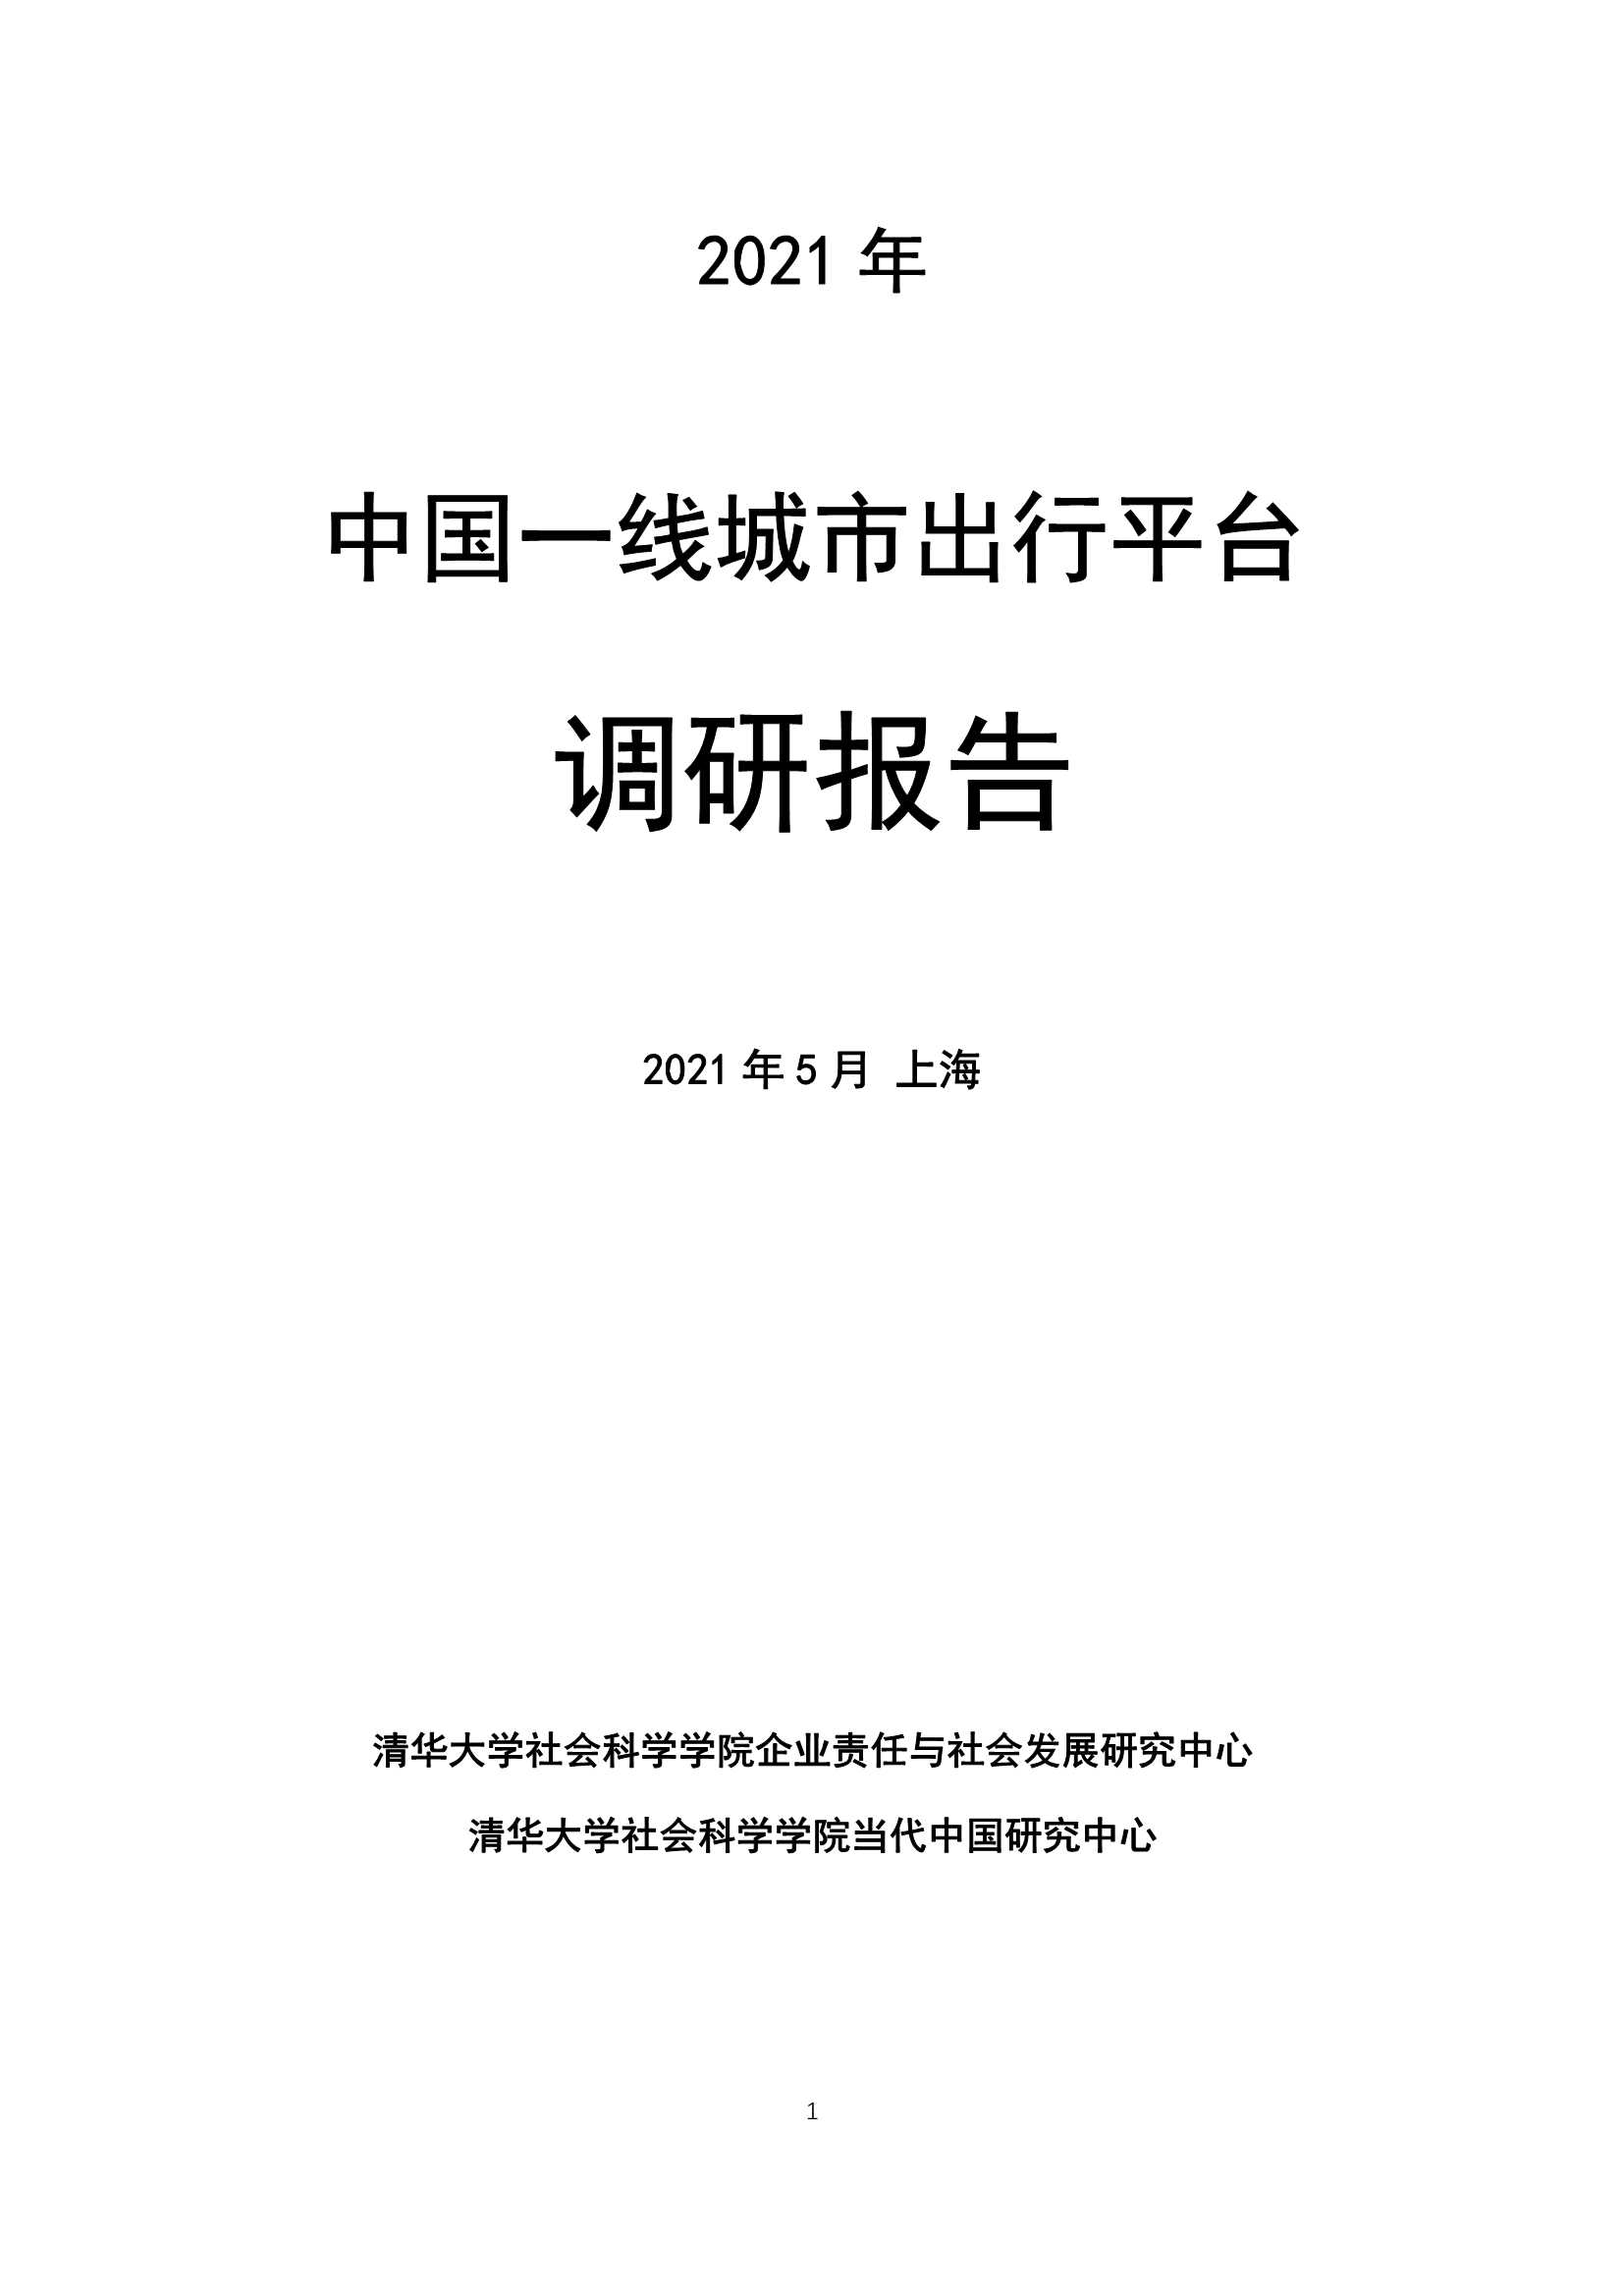 清华大学-2021年中国一线城市出行平台调研报告-2021.05-77页